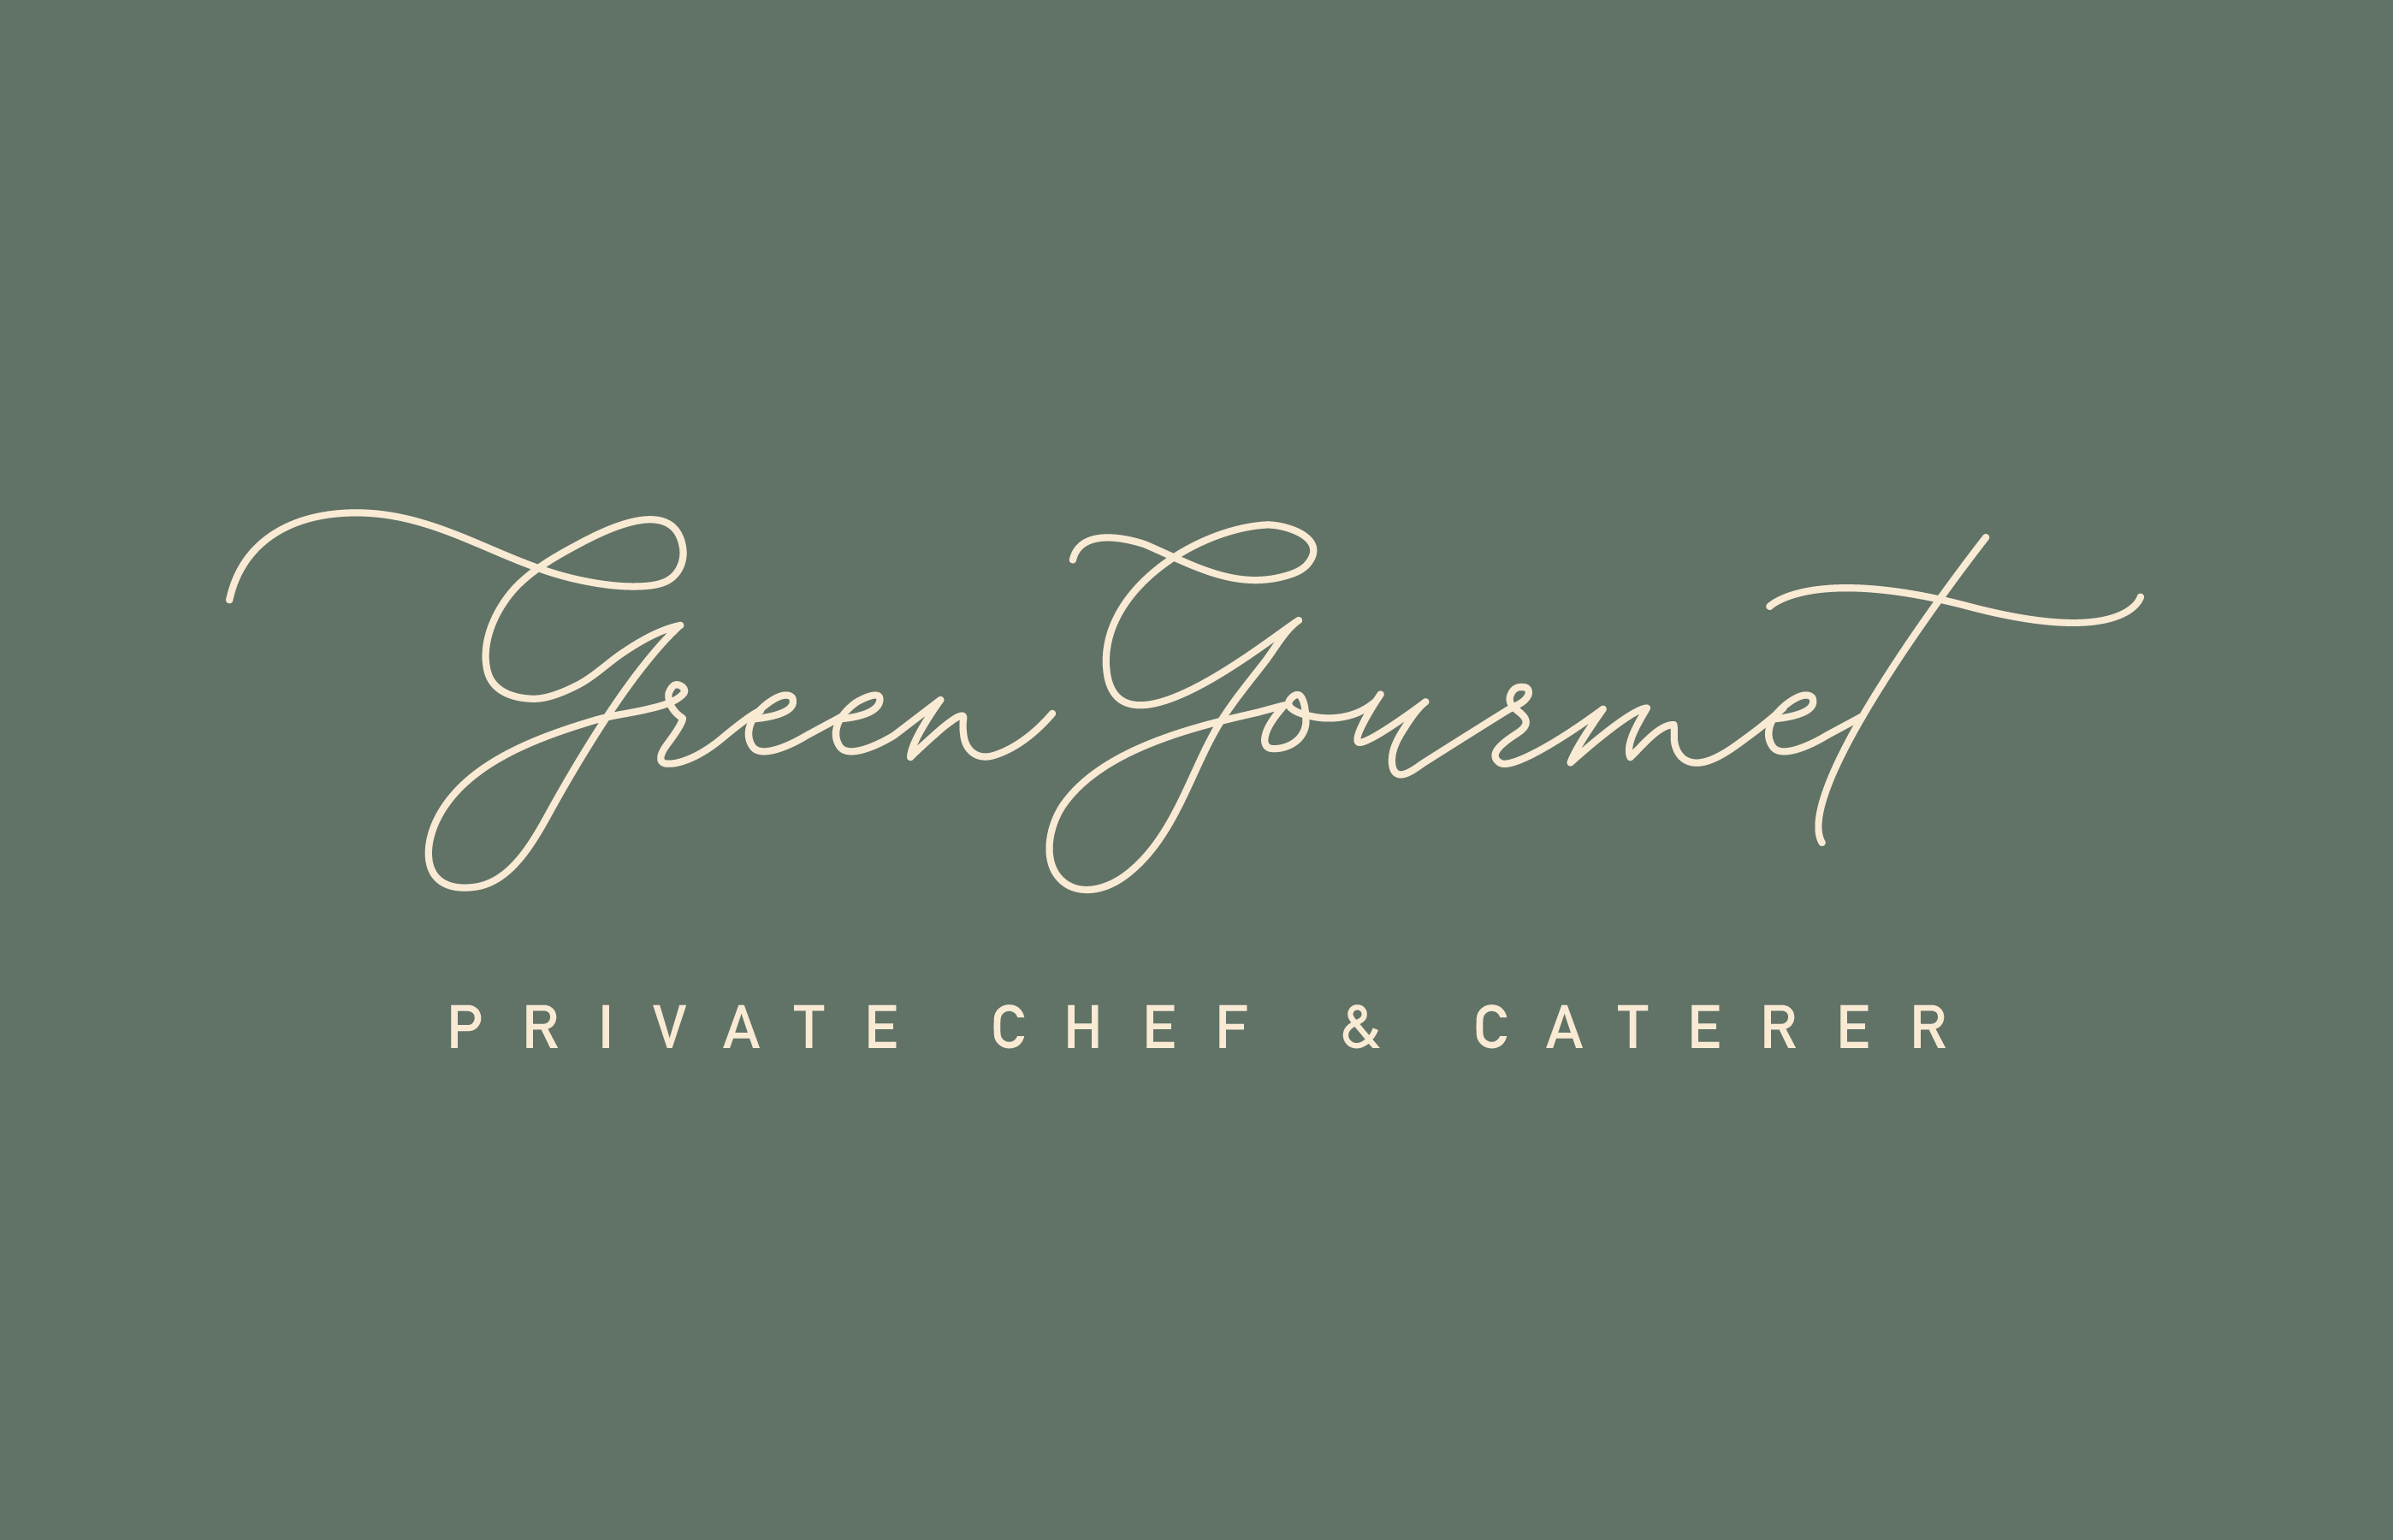 Green Gourmet Logo